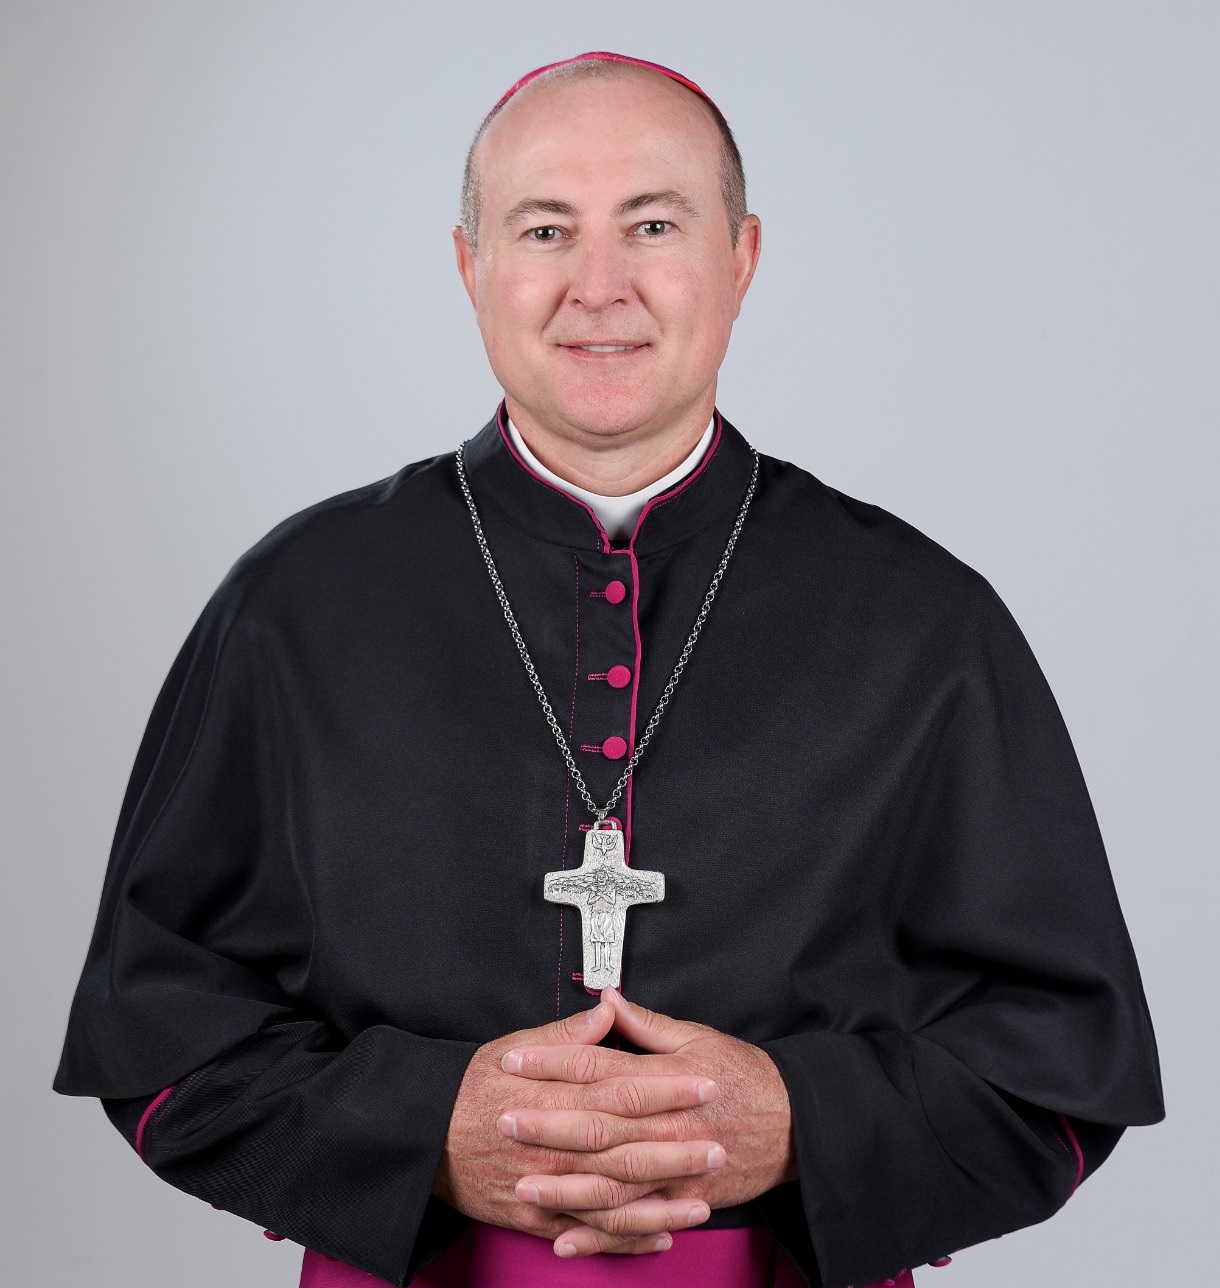 Ordenação Episcopal de Monsenhor Reginei José Modolo acontece neste domingo (05)